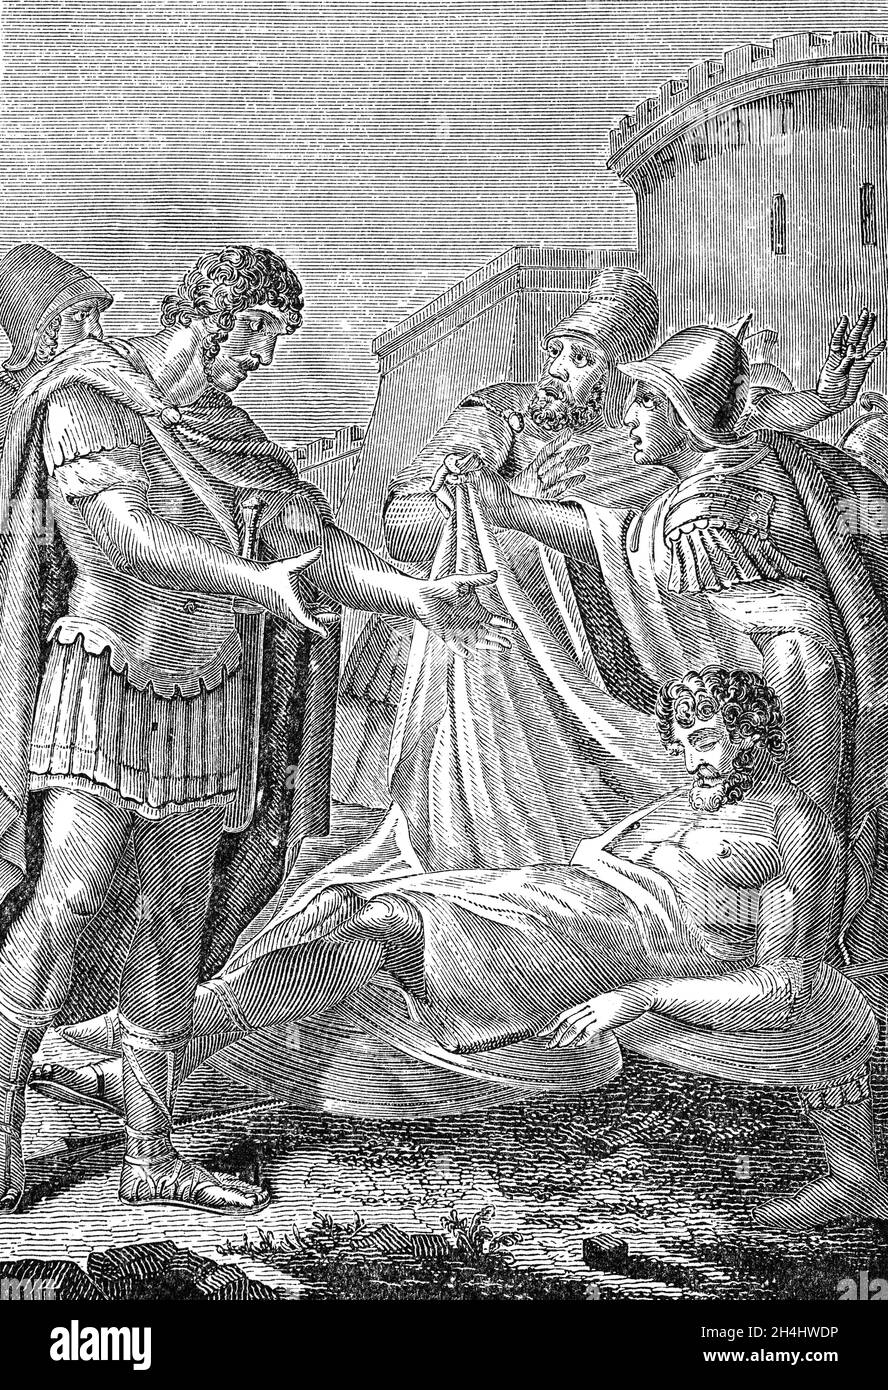 Un'illustrazione del tardo 19 ° secolo di Ottaviano aka Cesare Augusto (63BC- 14 d.C.), guardando il corpo di Marco Antony. Ottaviano fu il primo imperatore romano, regnò dal 27 a.C. fino alla sua morte nel 14 d.C.. Fondatore del Principato Romano (la prima fase dell'Impero Romano) fu uno dei leader più efficaci della storia umana. Durante il conflitto in corso con Antony e Cleopatra, Ottaviano inseguì e sconfisse le loro forze ad Alessandria nel 30 a.C., dopo di che Antony si suicidò, cadendo sulla sua spada. Foto Stock